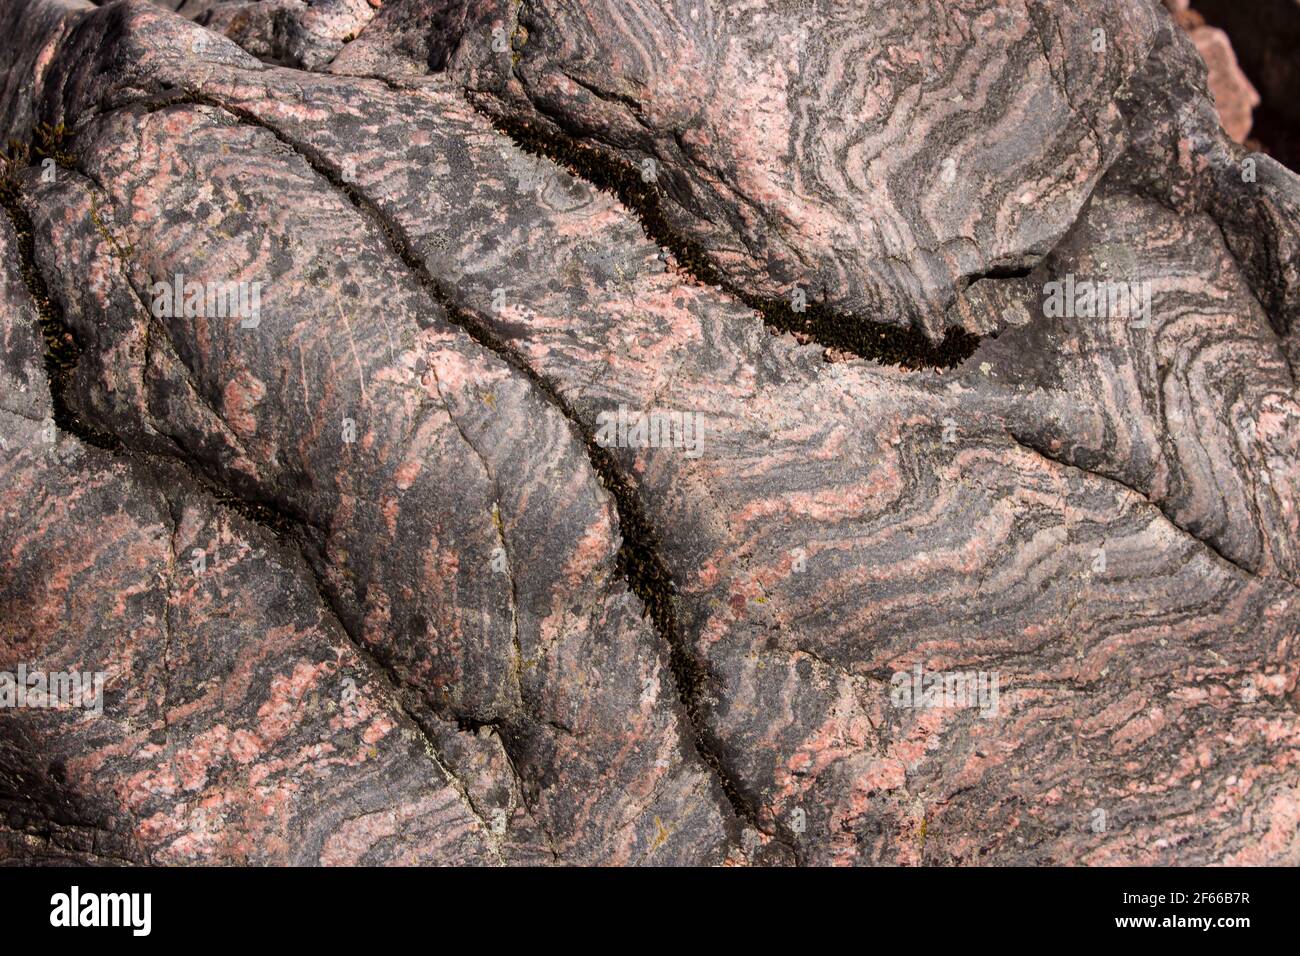 Primo piano di una sezione di gneiss Lewisian di colore grigio, esposta in un affioramento sulle rive del Loch Ness nelle Highlands scozzesi del nord del Regno Unito Foto Stock